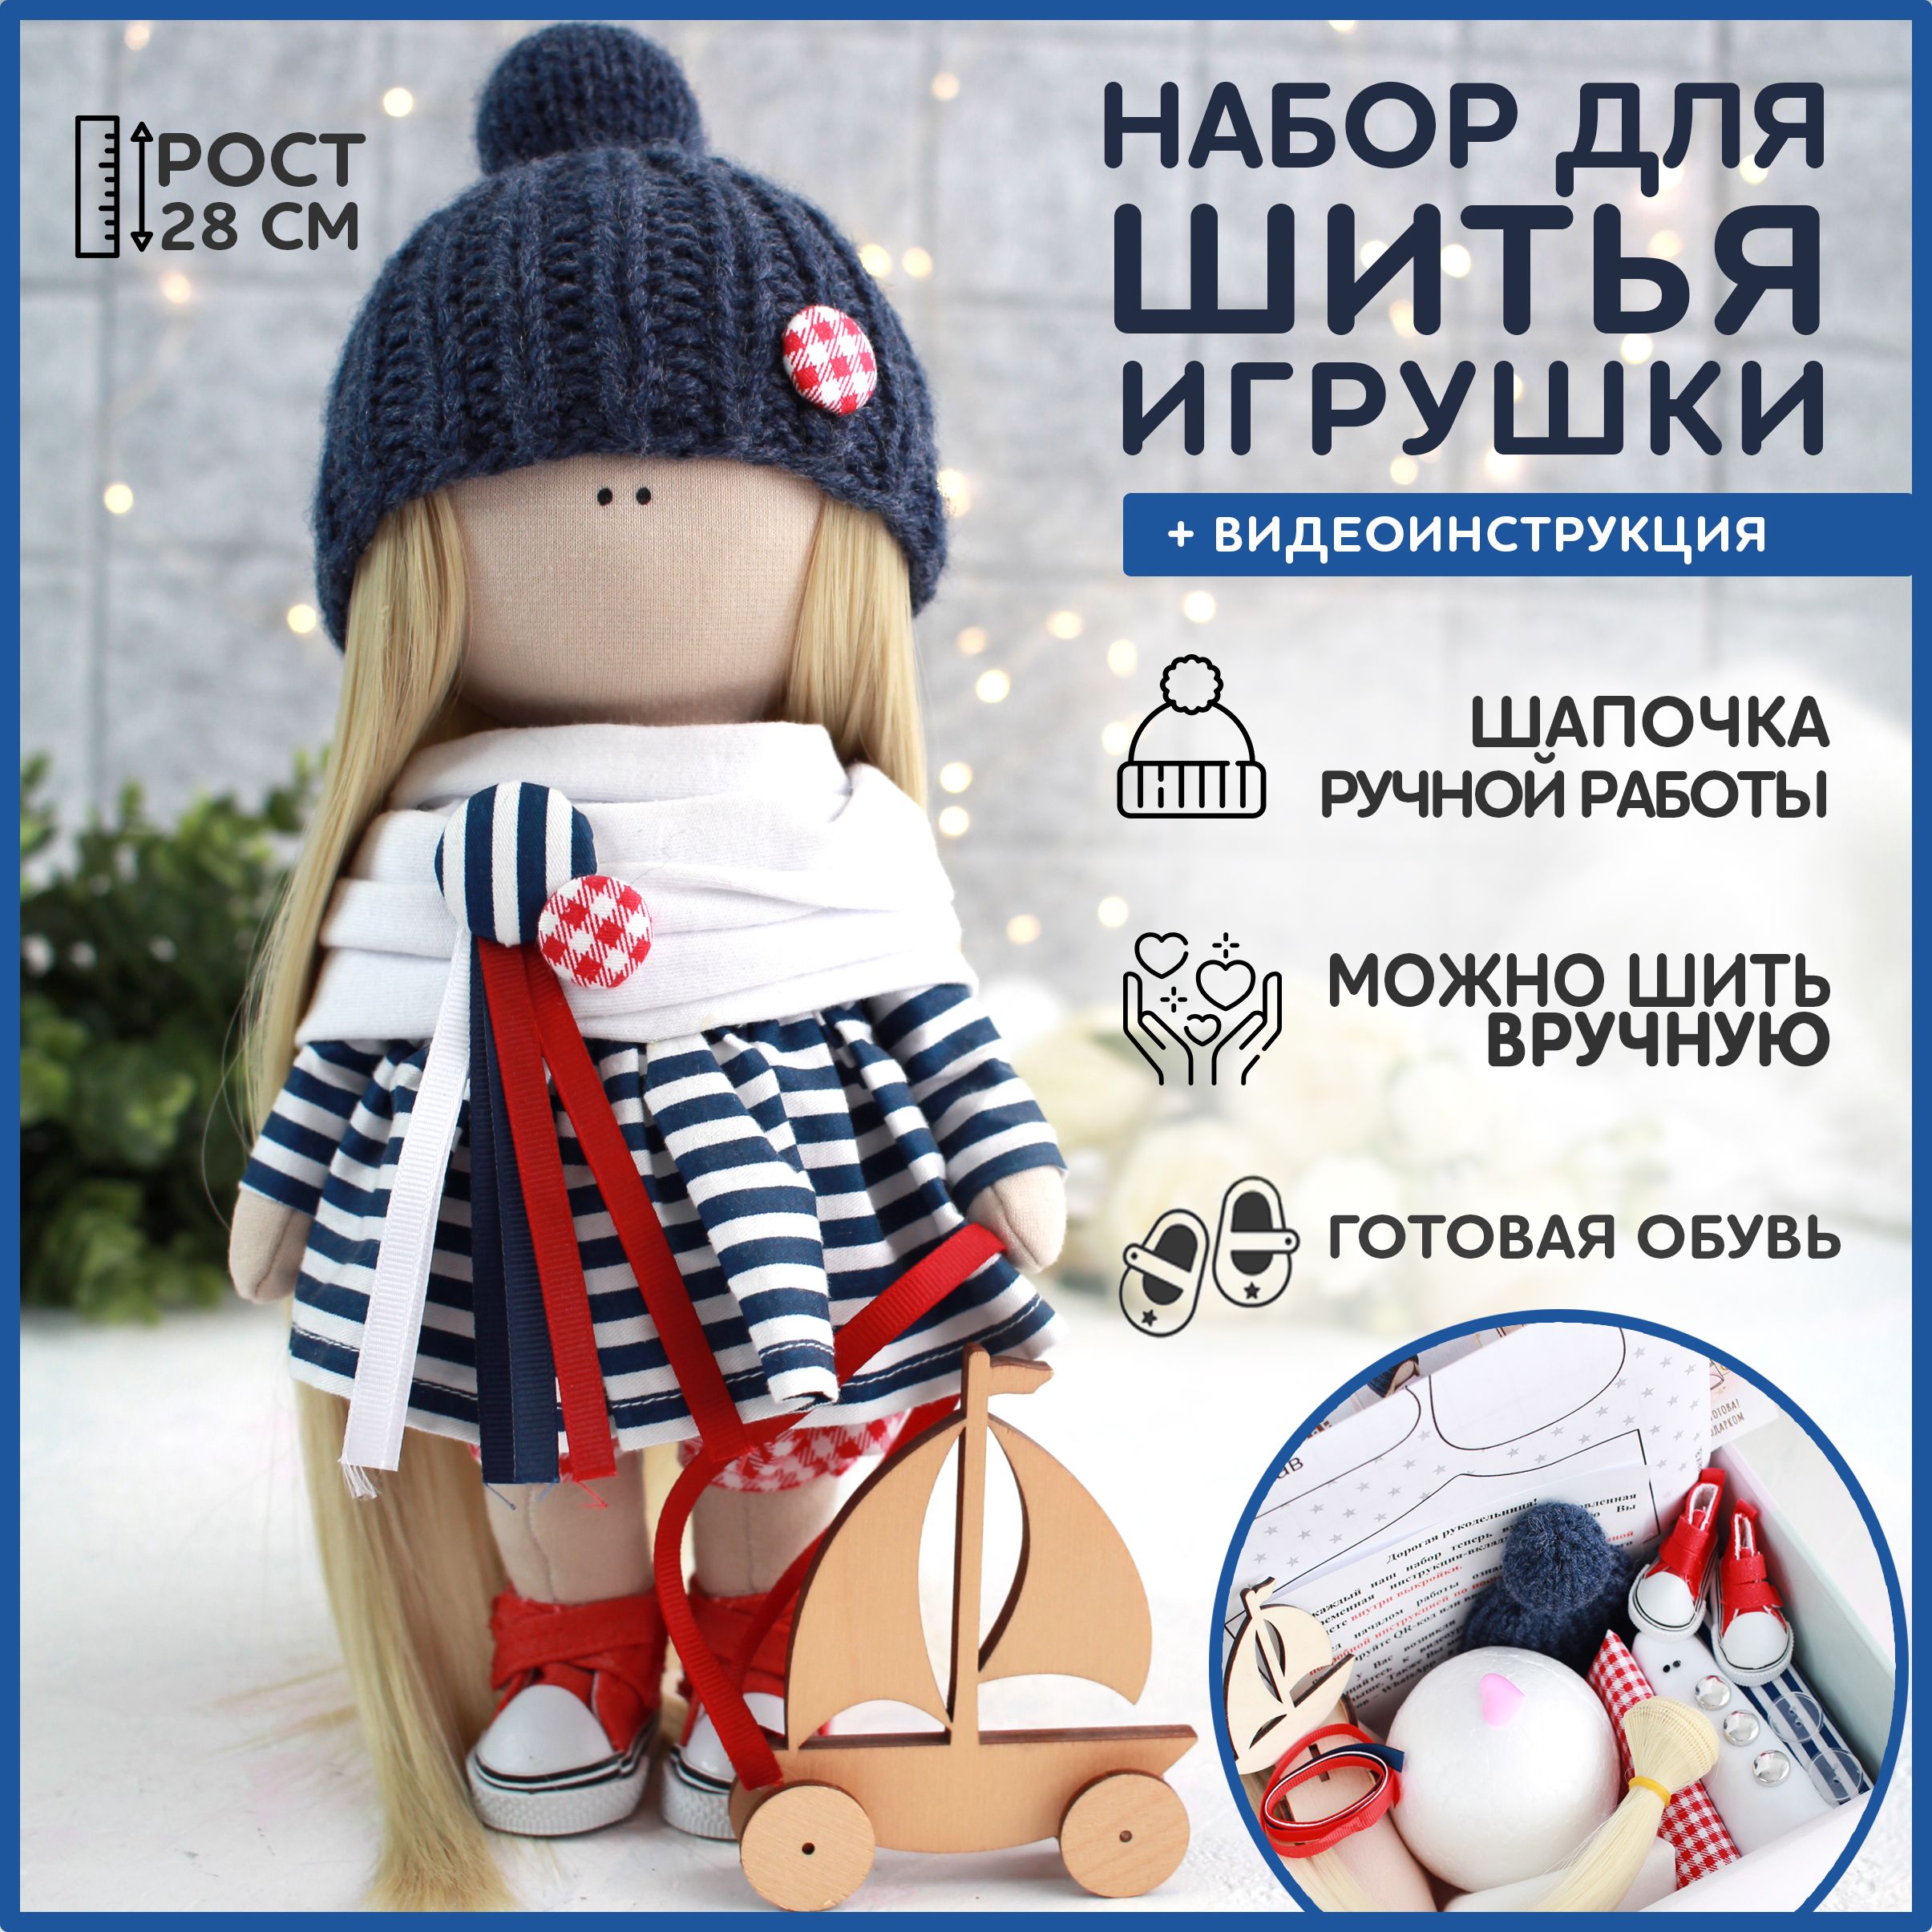 paraskevat.ru: стильная одежда своими руками